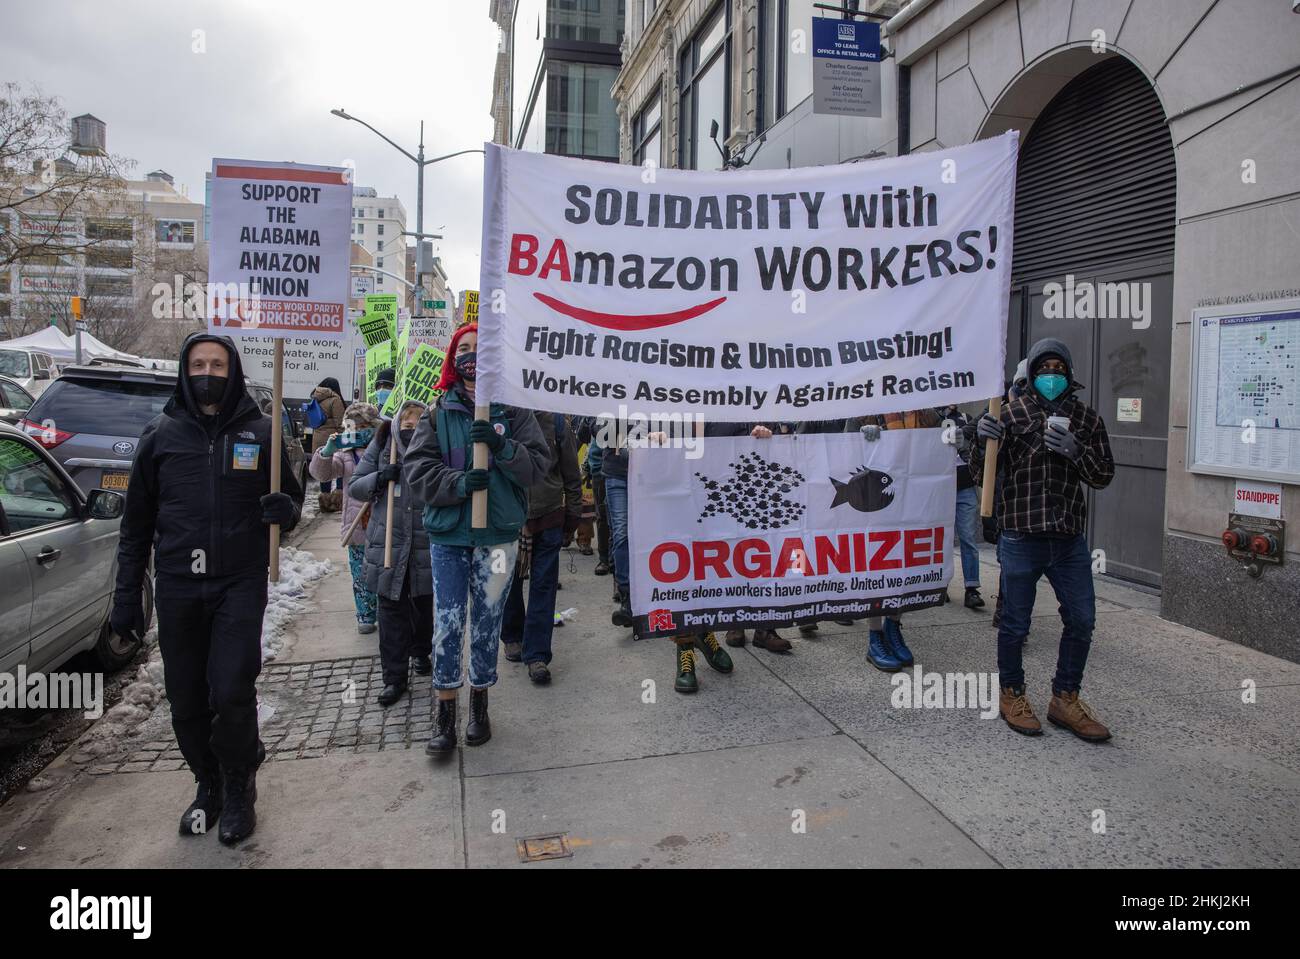 NEW YORK, NY – 20. Februar 2021: Demonstranten versammeln sich in Manhattan zur Unterstützung der Amazon-Arbeiter in Alabama, die eine Gewerkschaft gründen wollen. Stockfoto